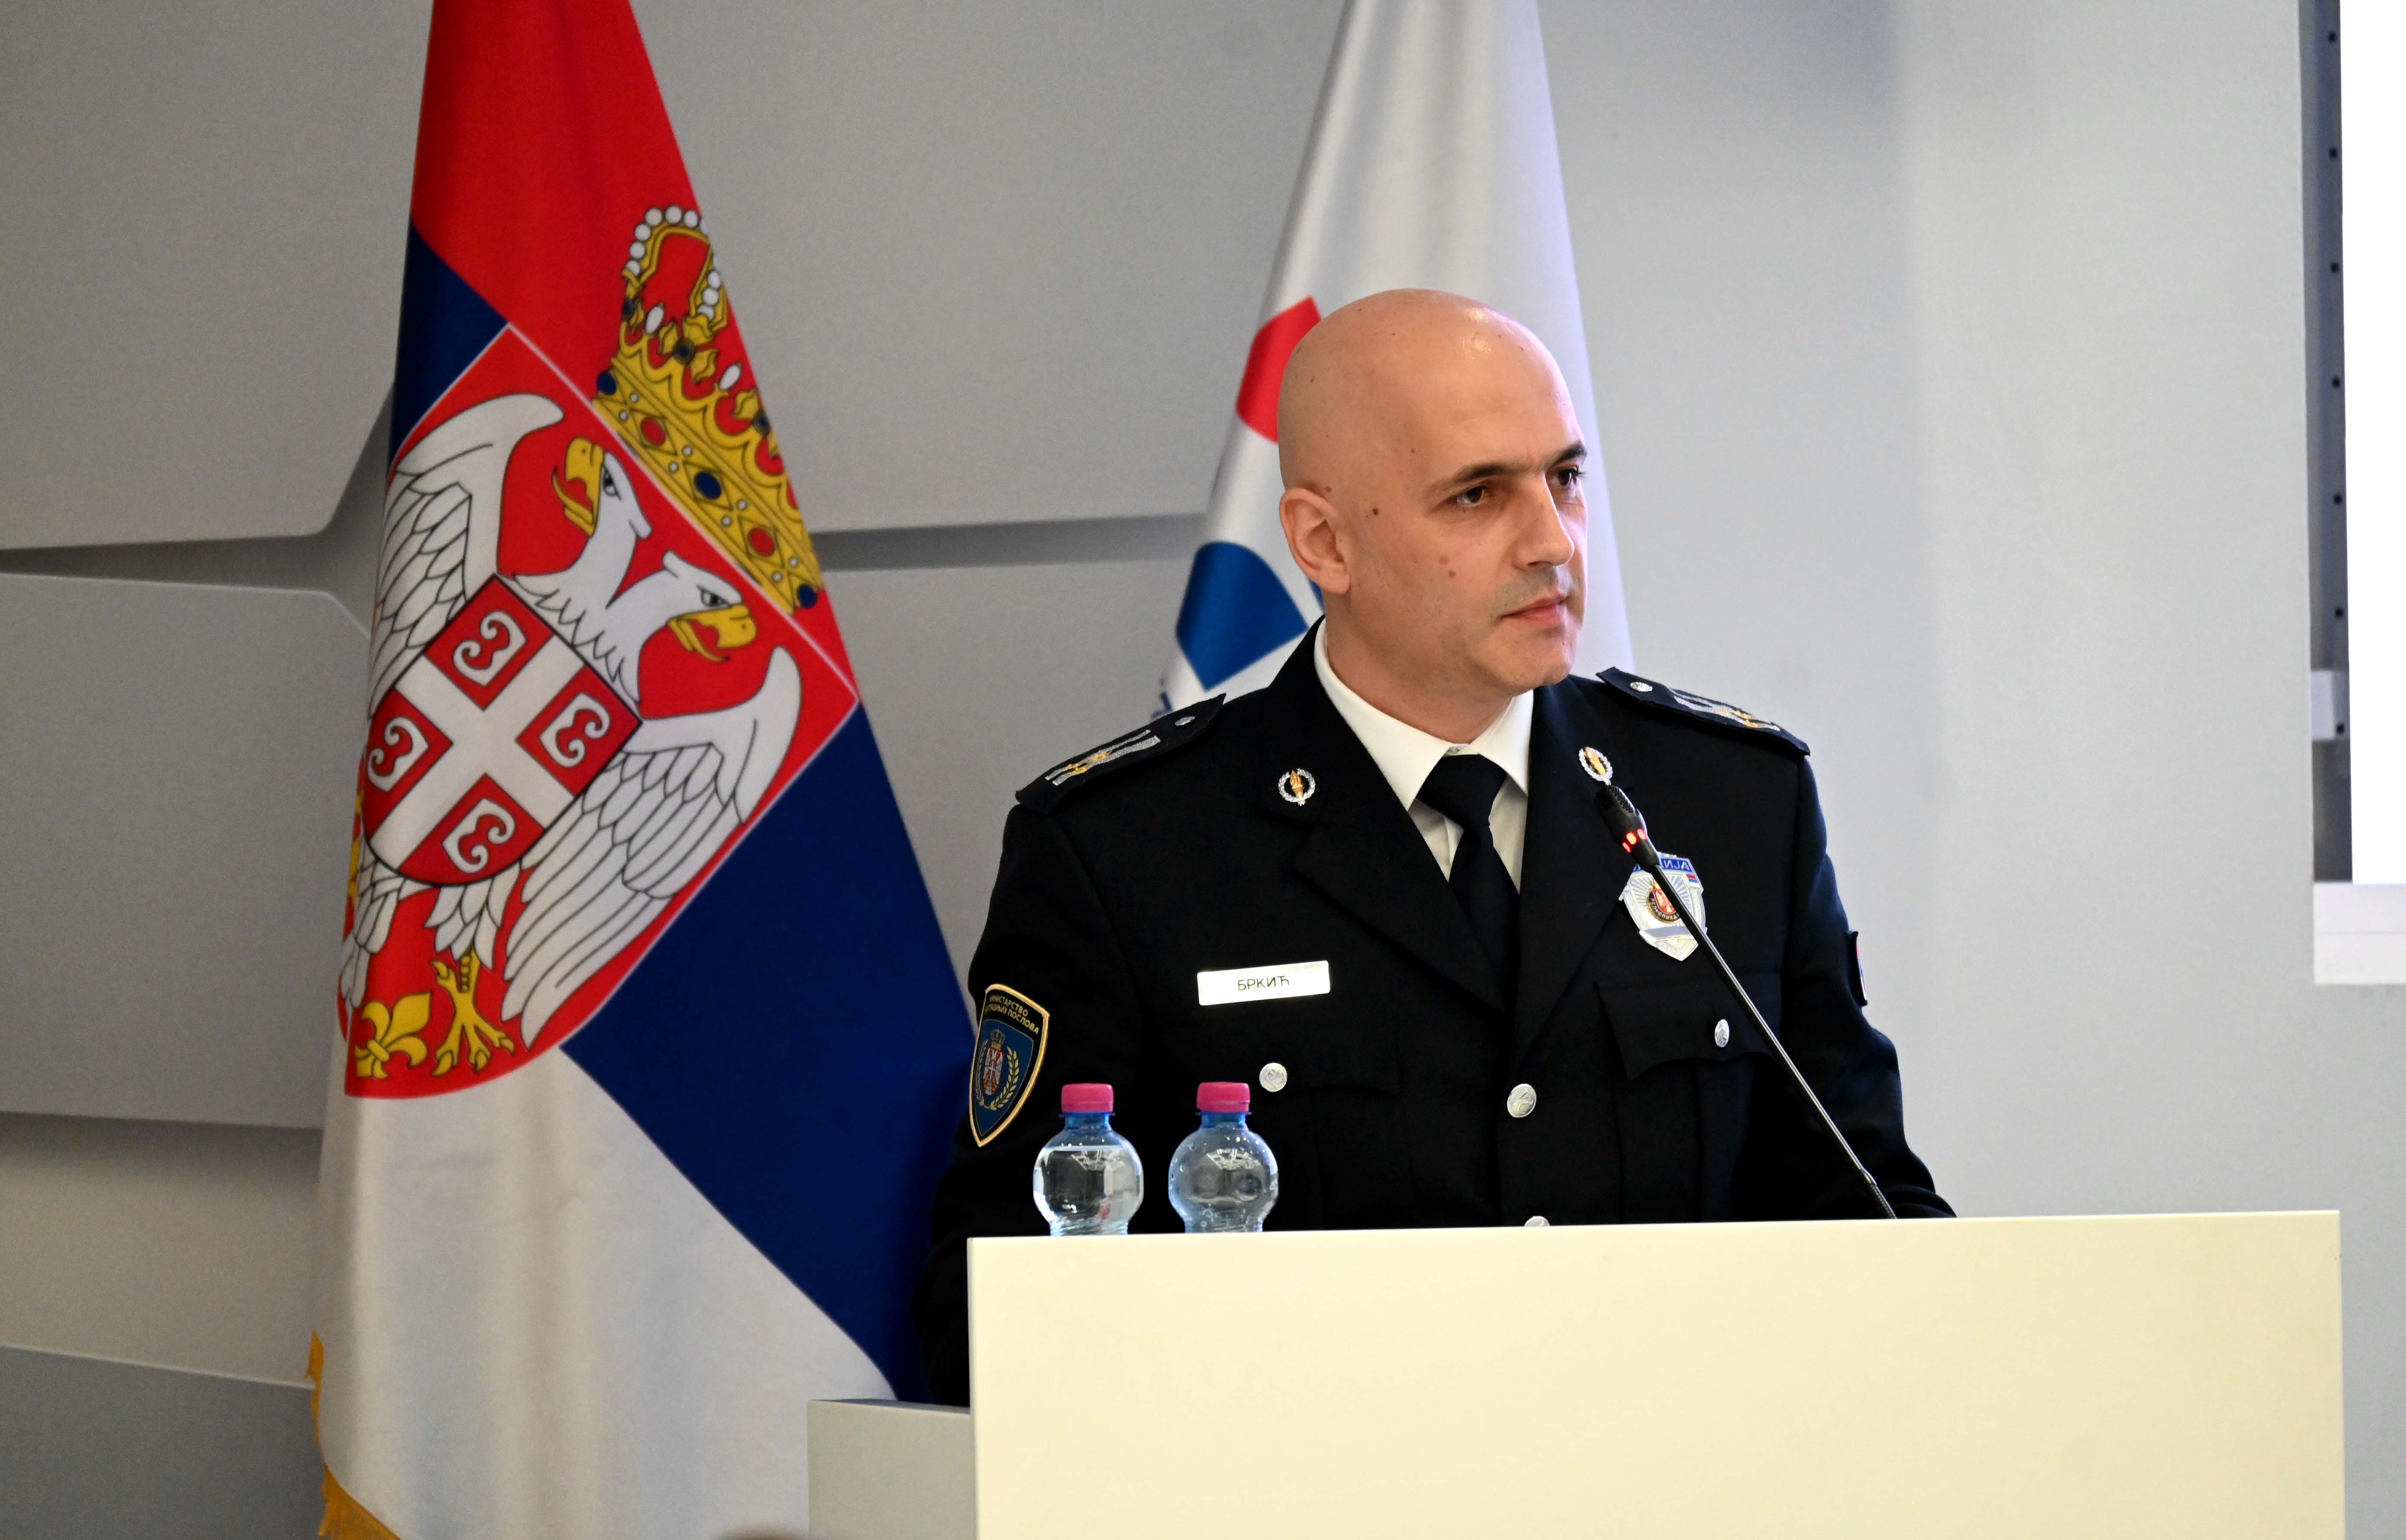 Državni sekretar dr Želјko Brkić: MUP će nastaviti da ulaže u obrazovanje policijskih službenika